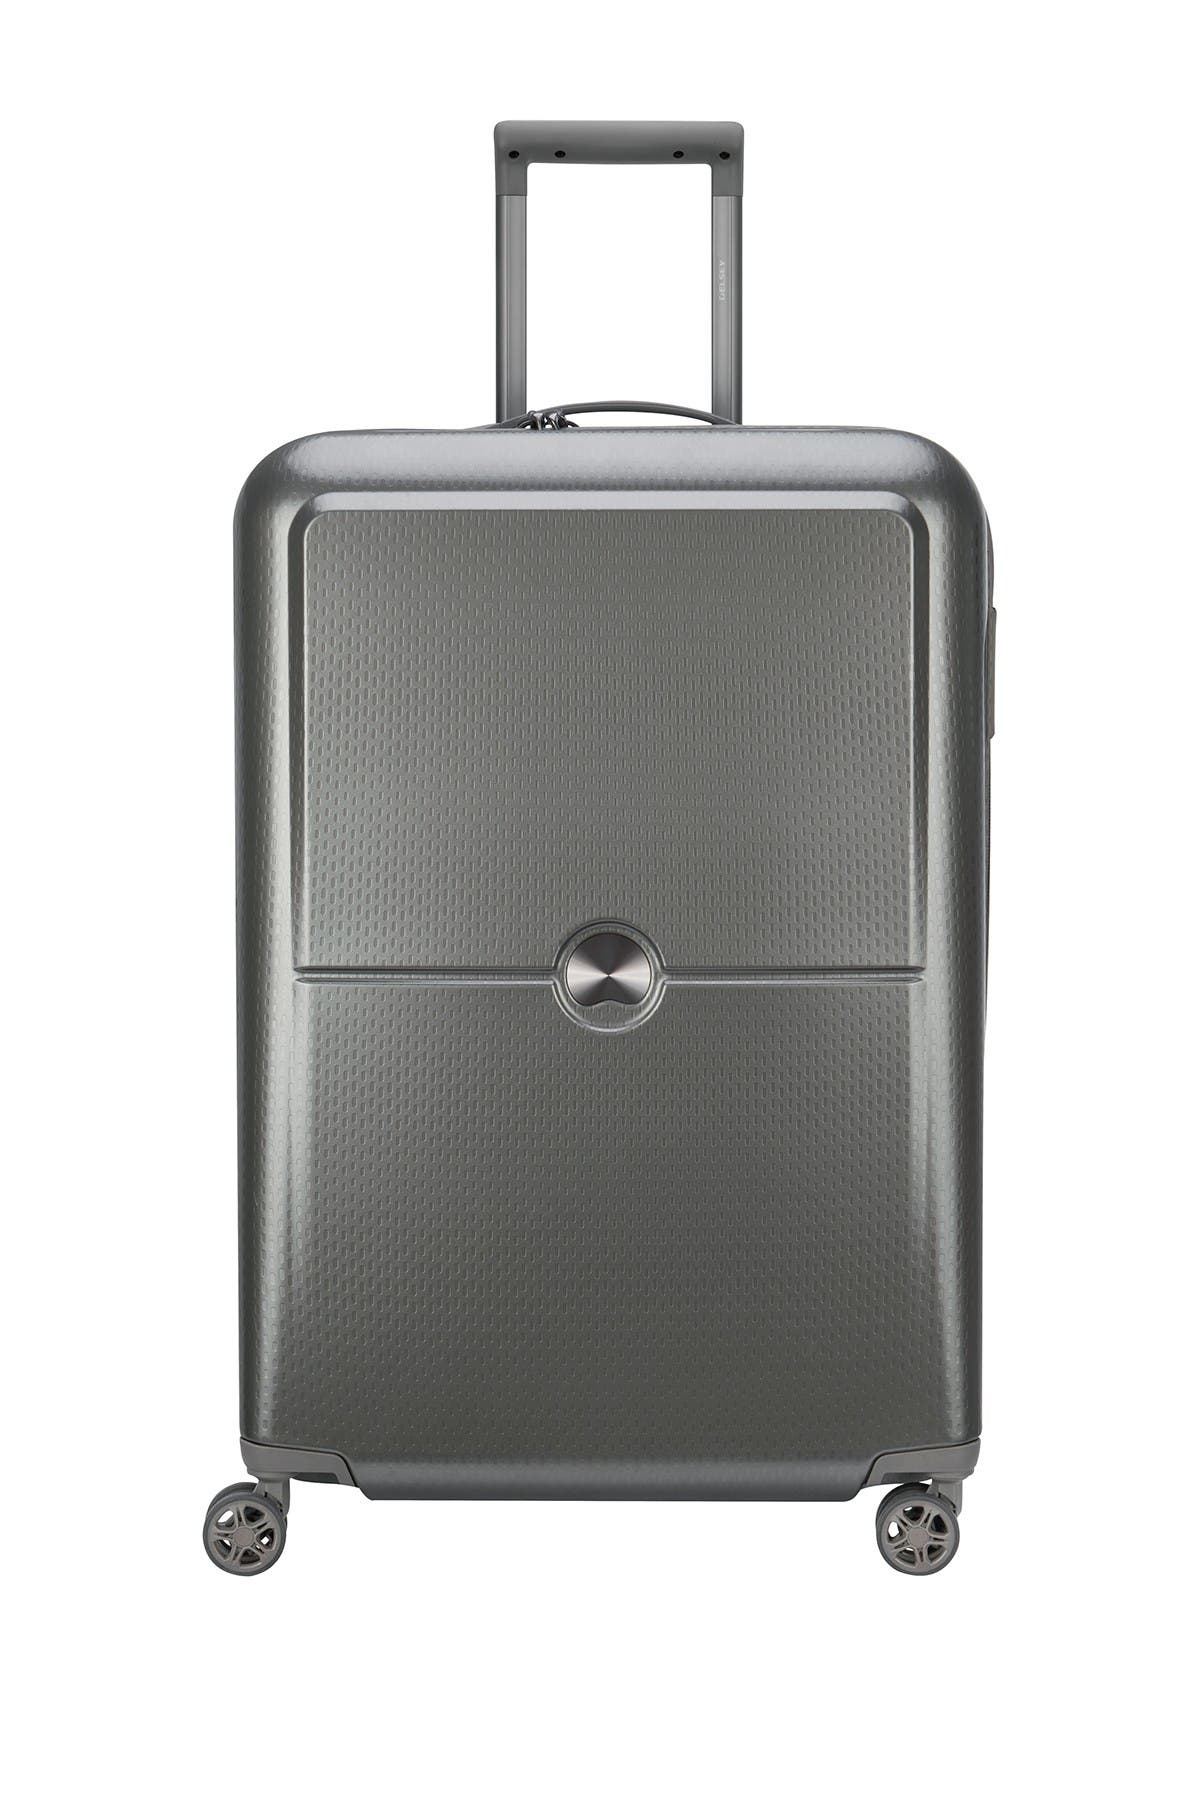 Delsey Turenne 27" Hardside Spinner Suitcase In Silver